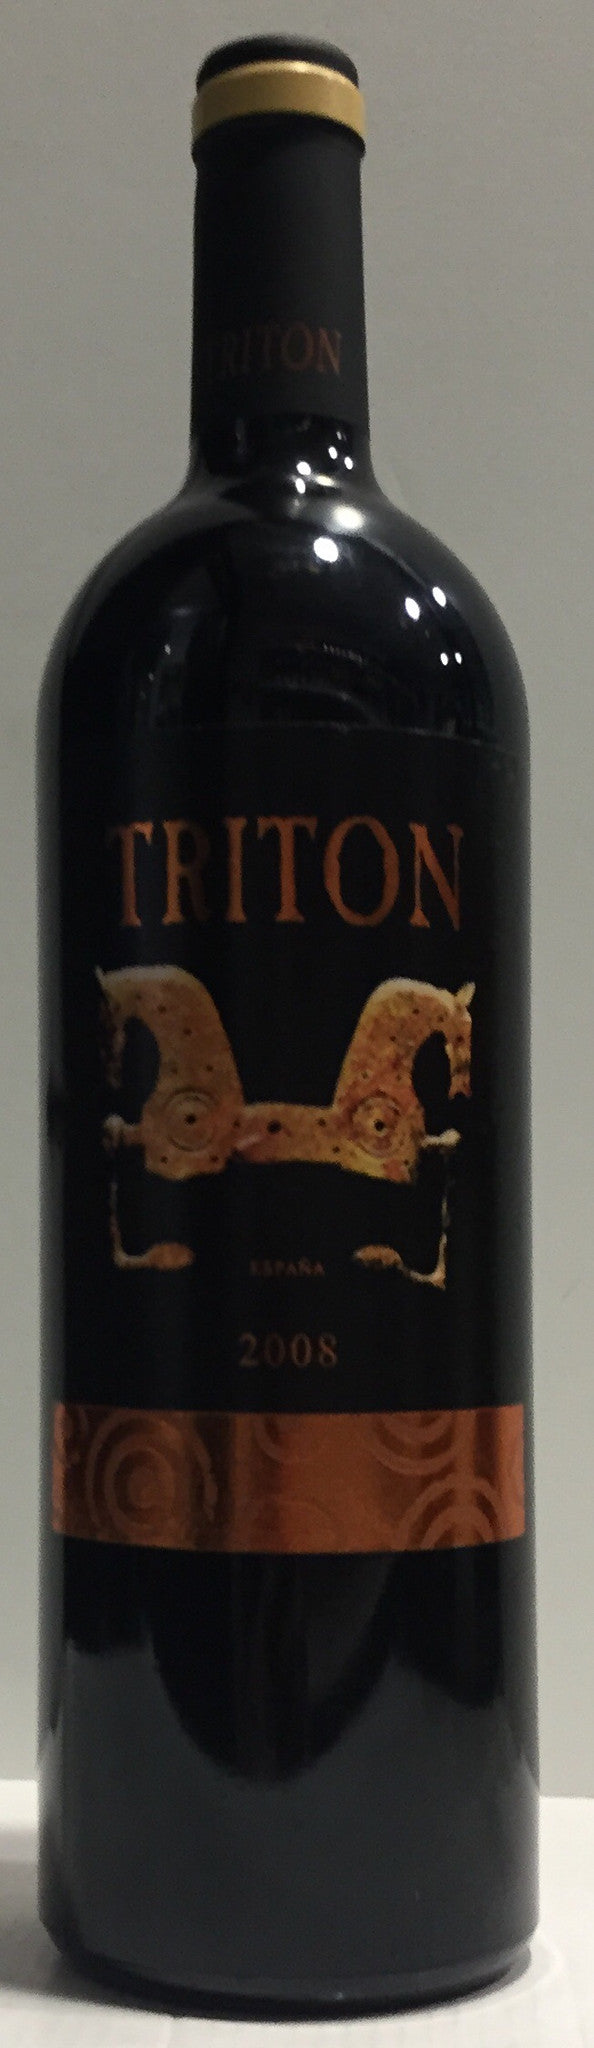 TRITON TEMPRANILLO 2008 - Bk Wine Depot Corp